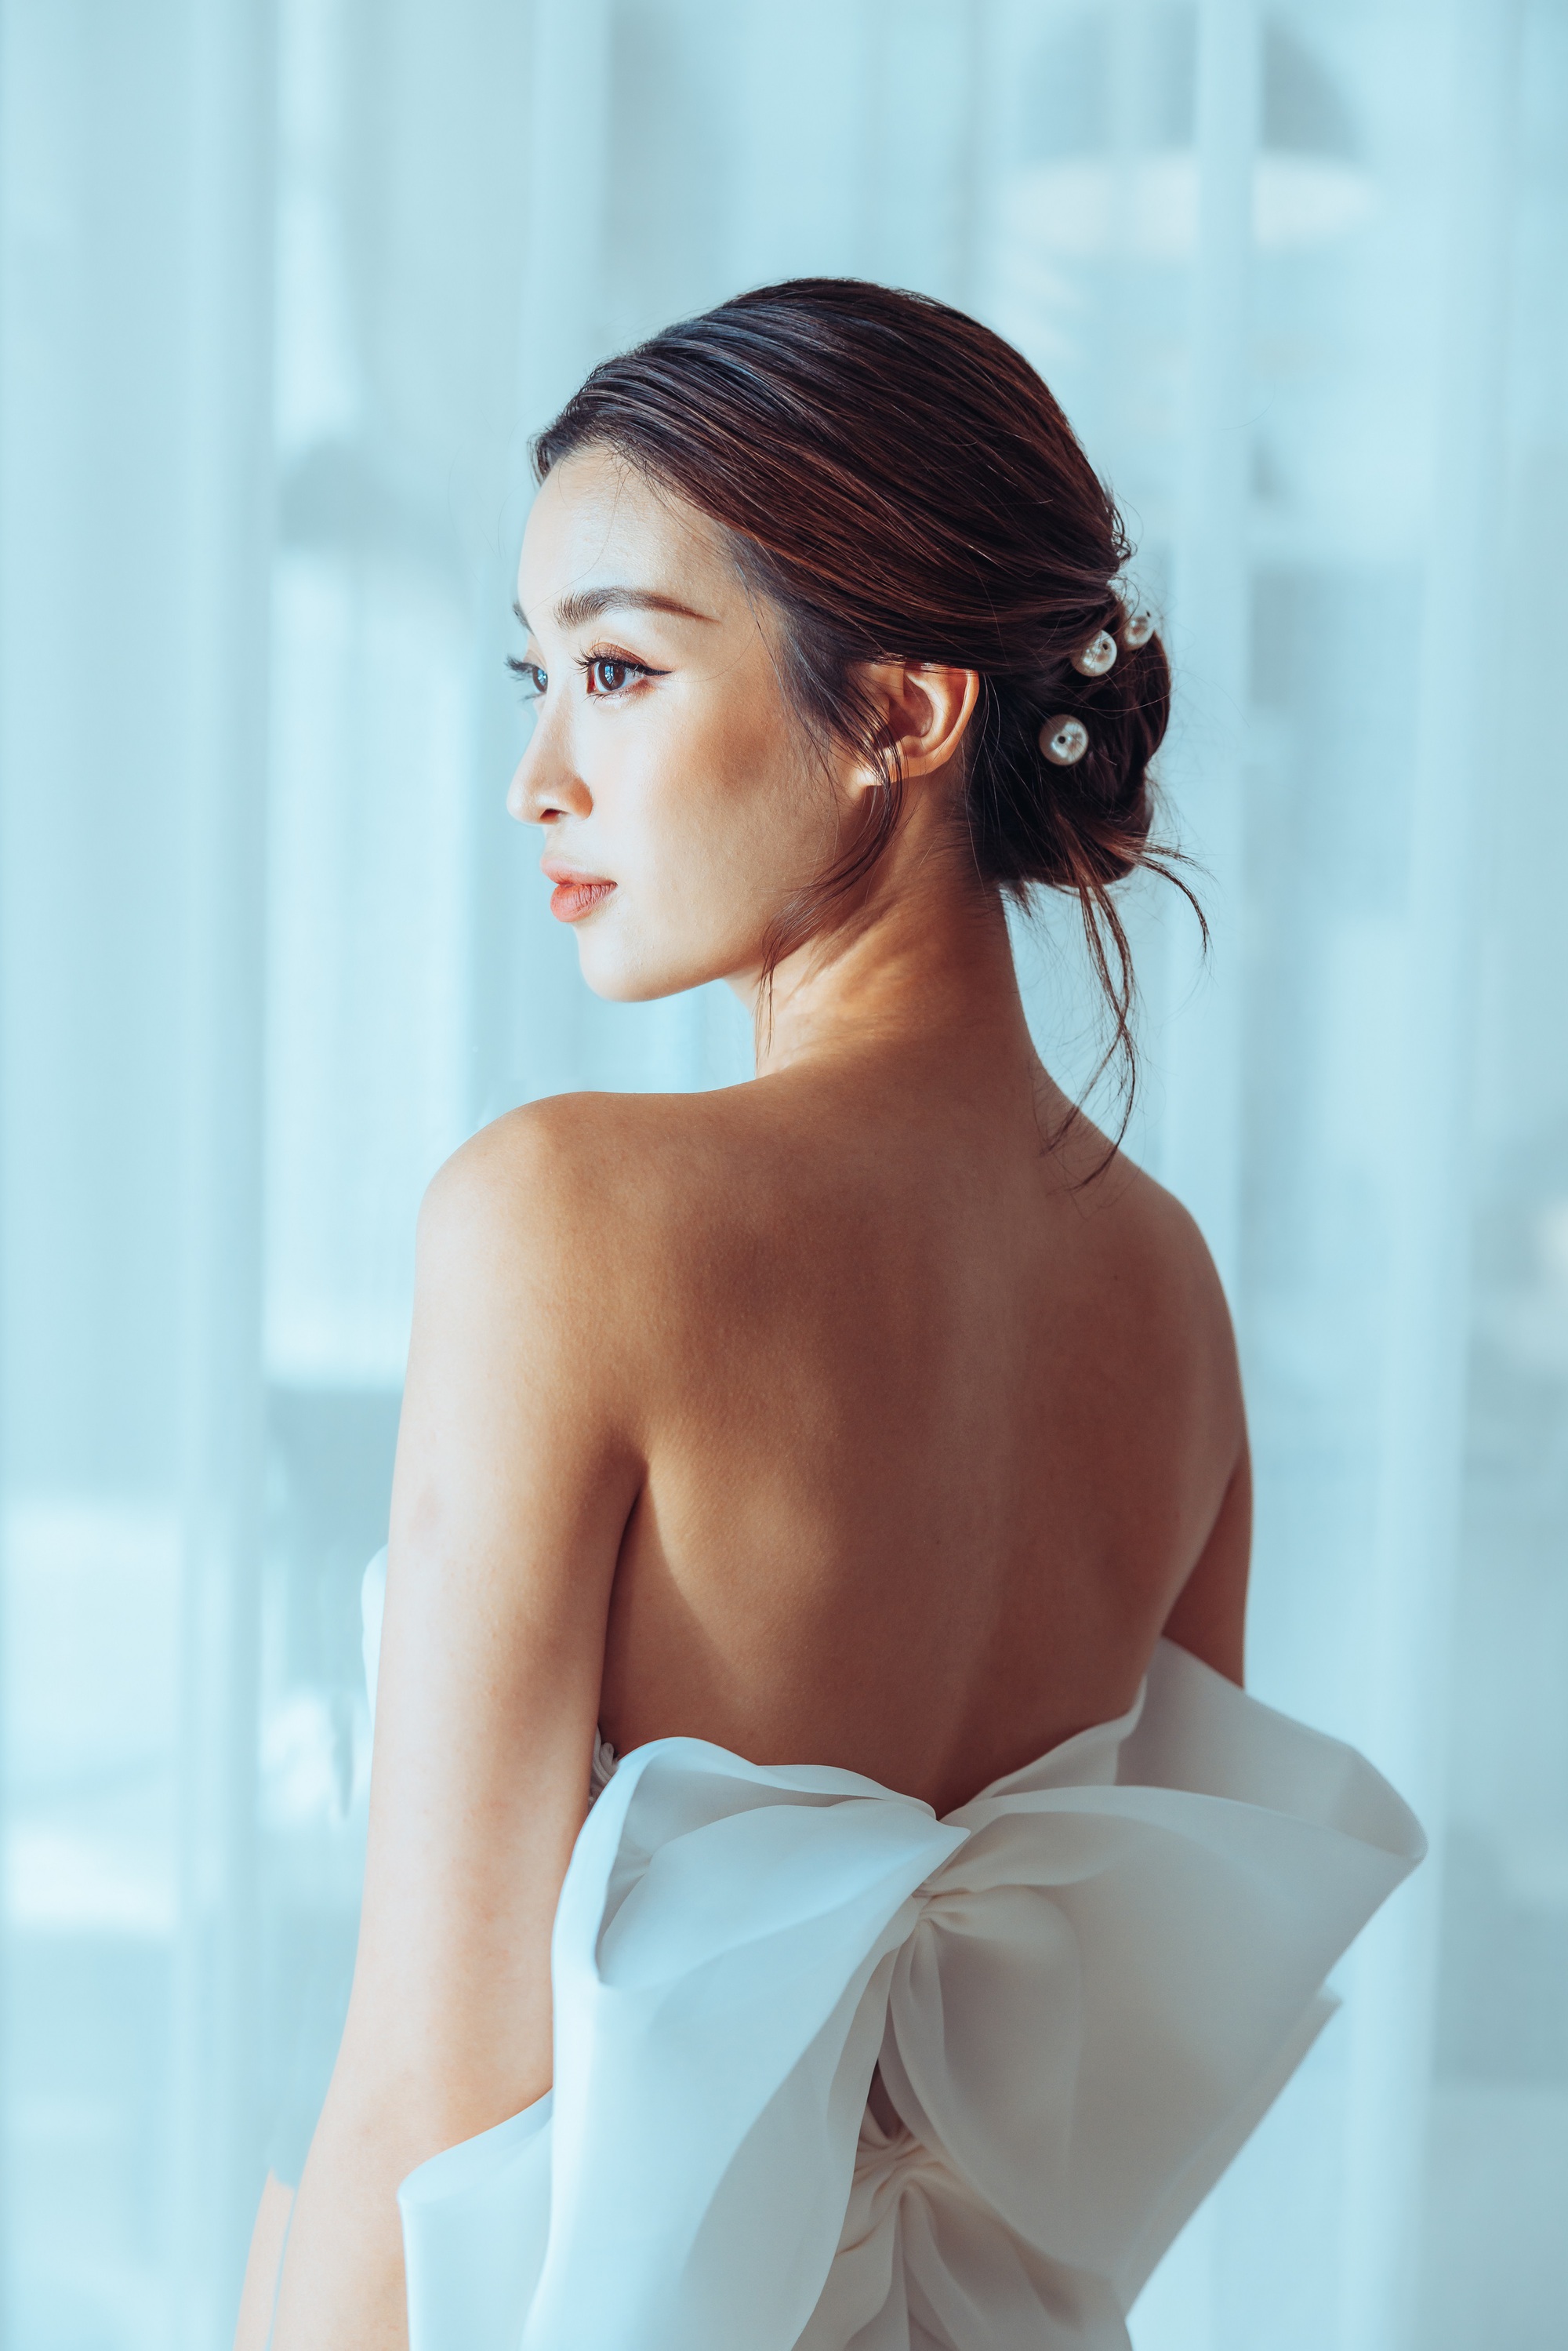 Hoa hậu Đỗ Mỹ Linh mặc váy cưới xinh đẹp khiến phụ nữ cũng phải rung động trước ngày lấy chồng - Ảnh 8.